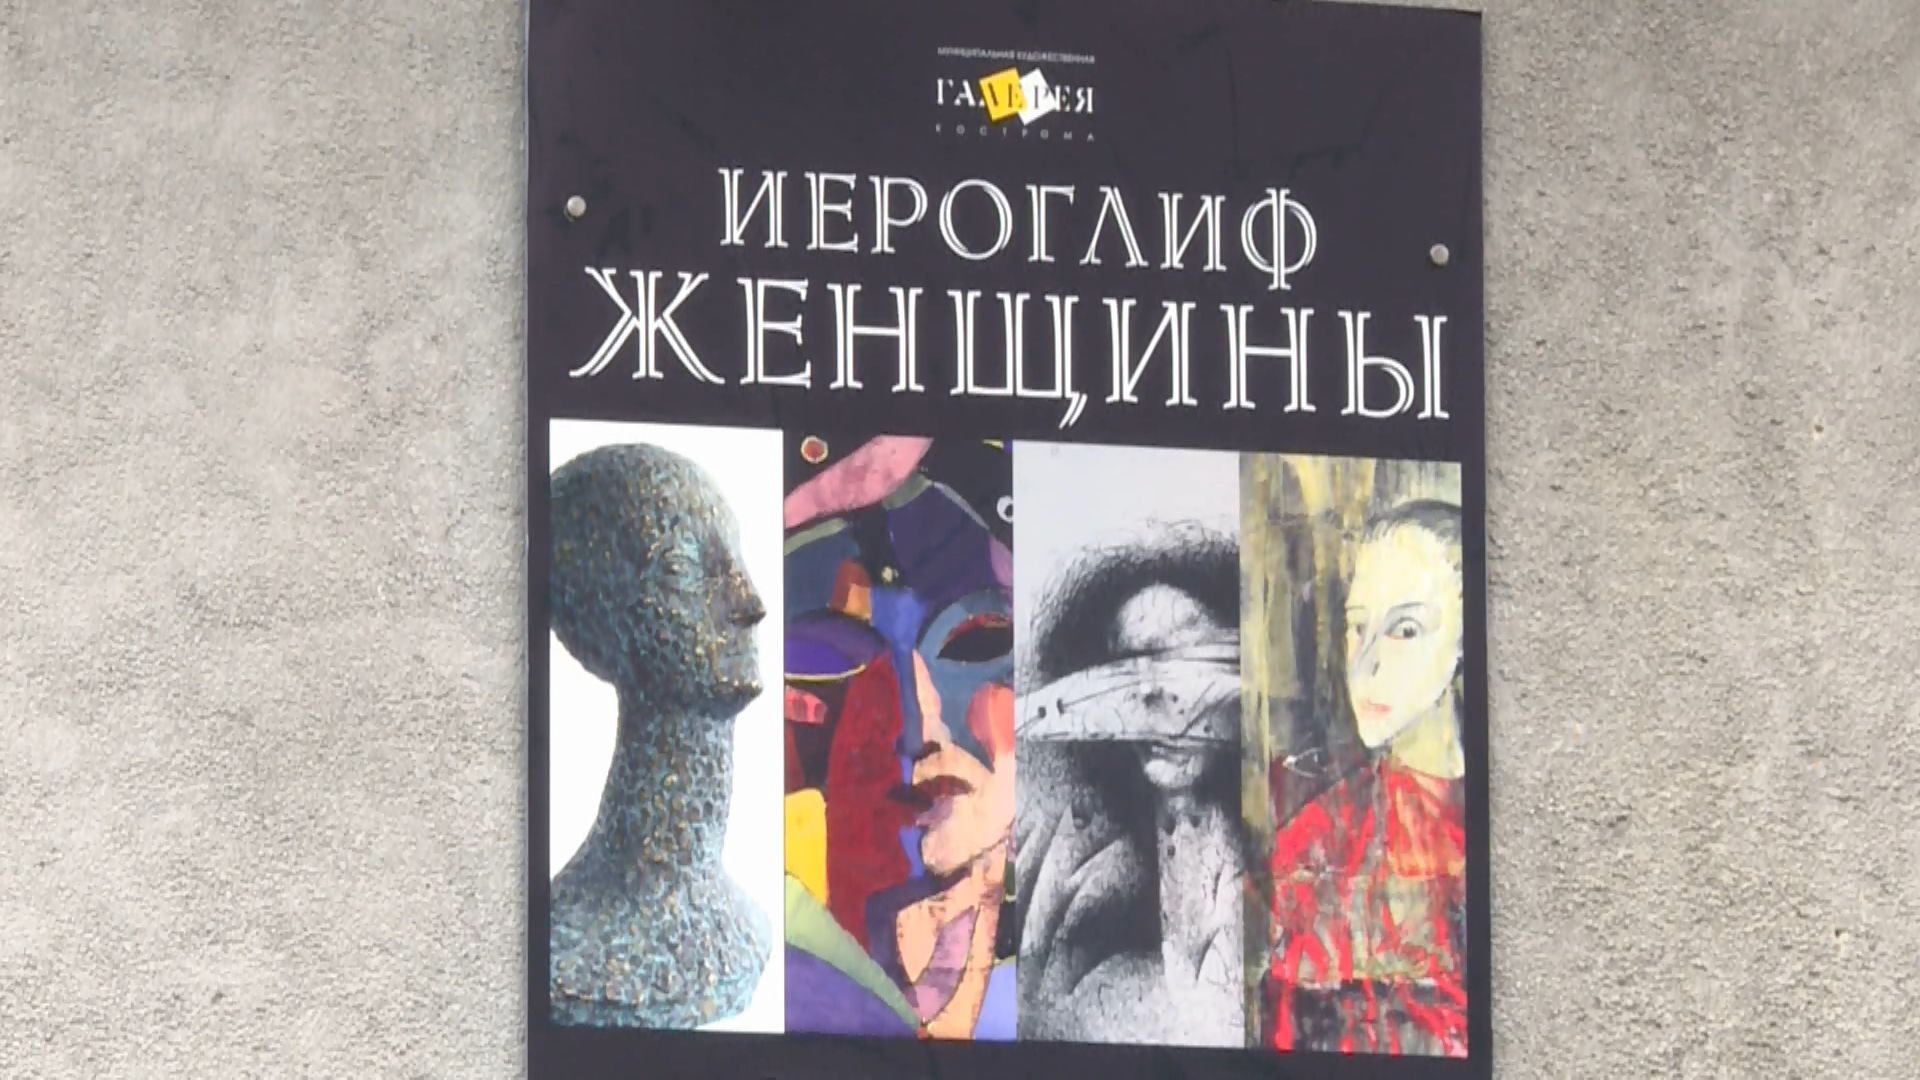 В Костроме открывается выставка «Иероглиф женщины»